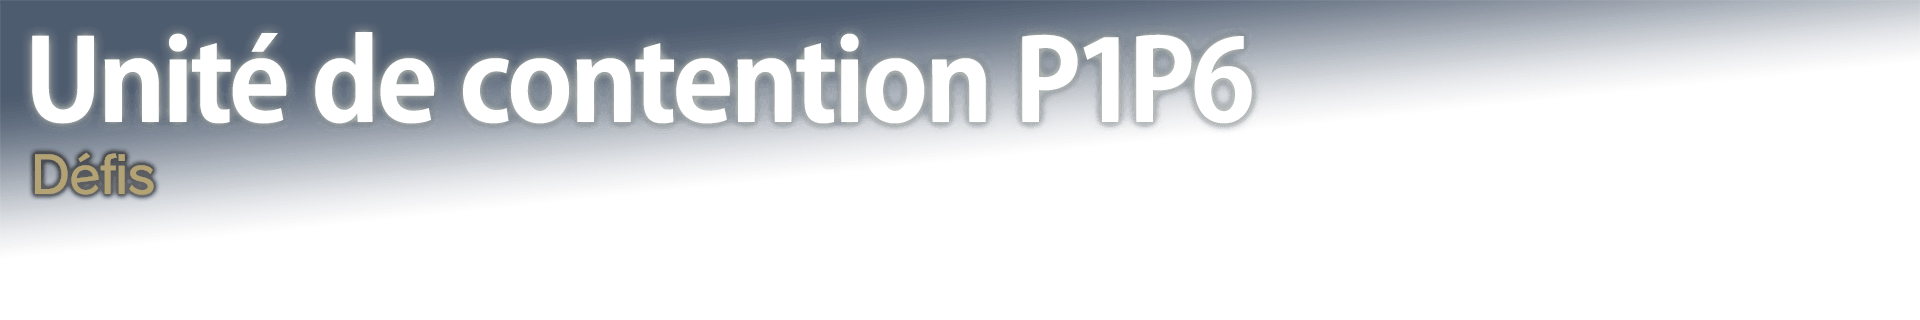 Unité de contention P1P6